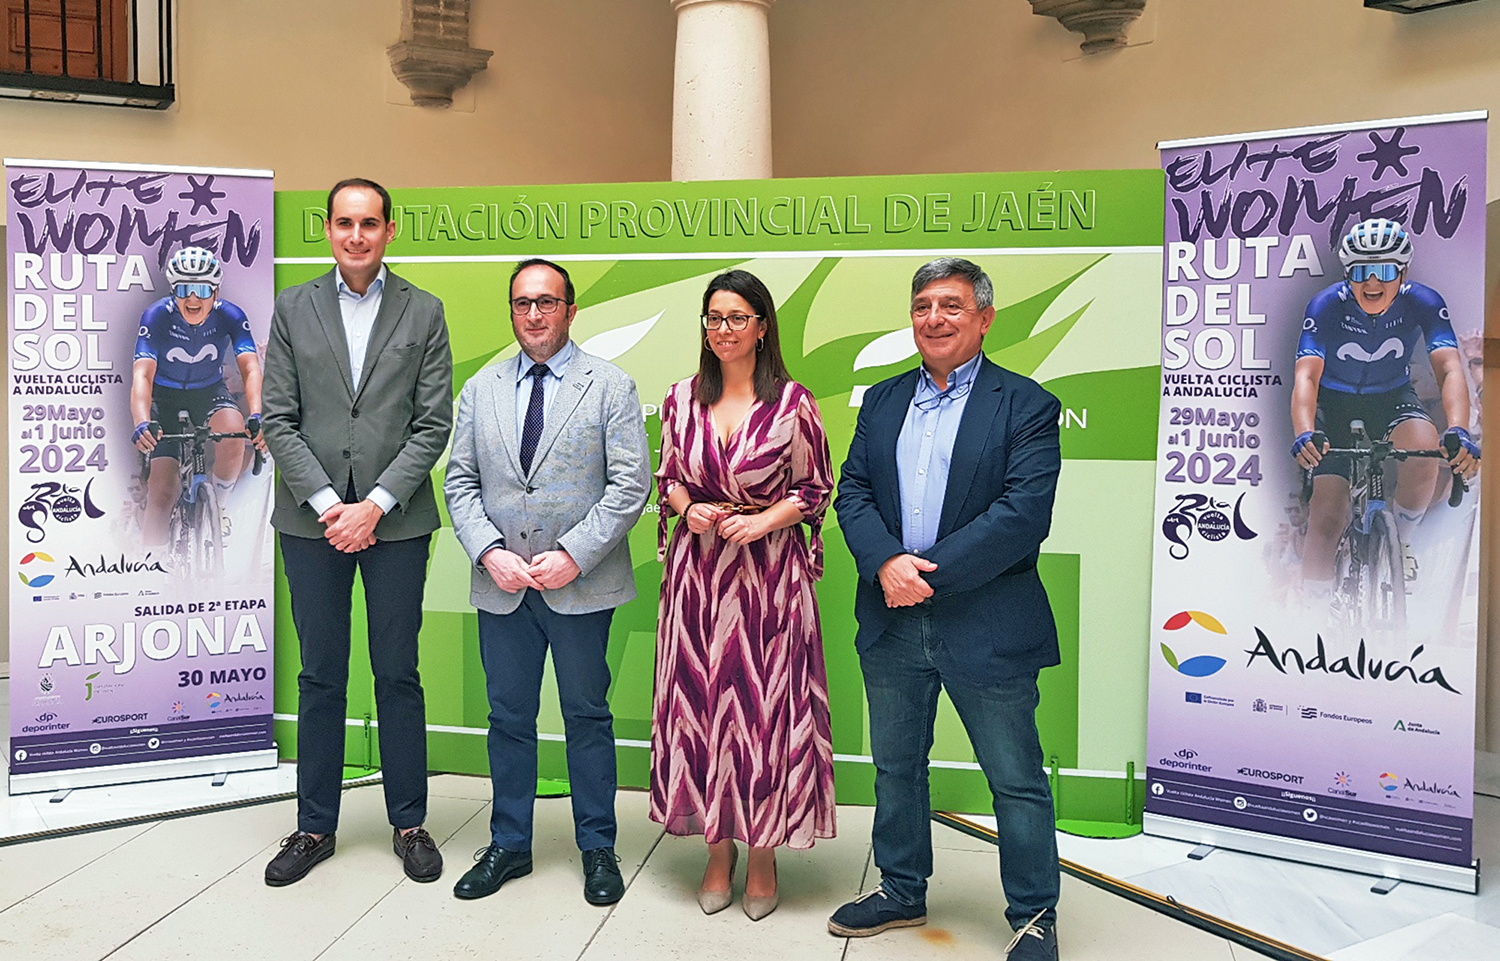 La provincia de Jaén acogerá el 30 de mayo la etapa más larga de la III Vuelta Ciclista a Andalucía Elite Women